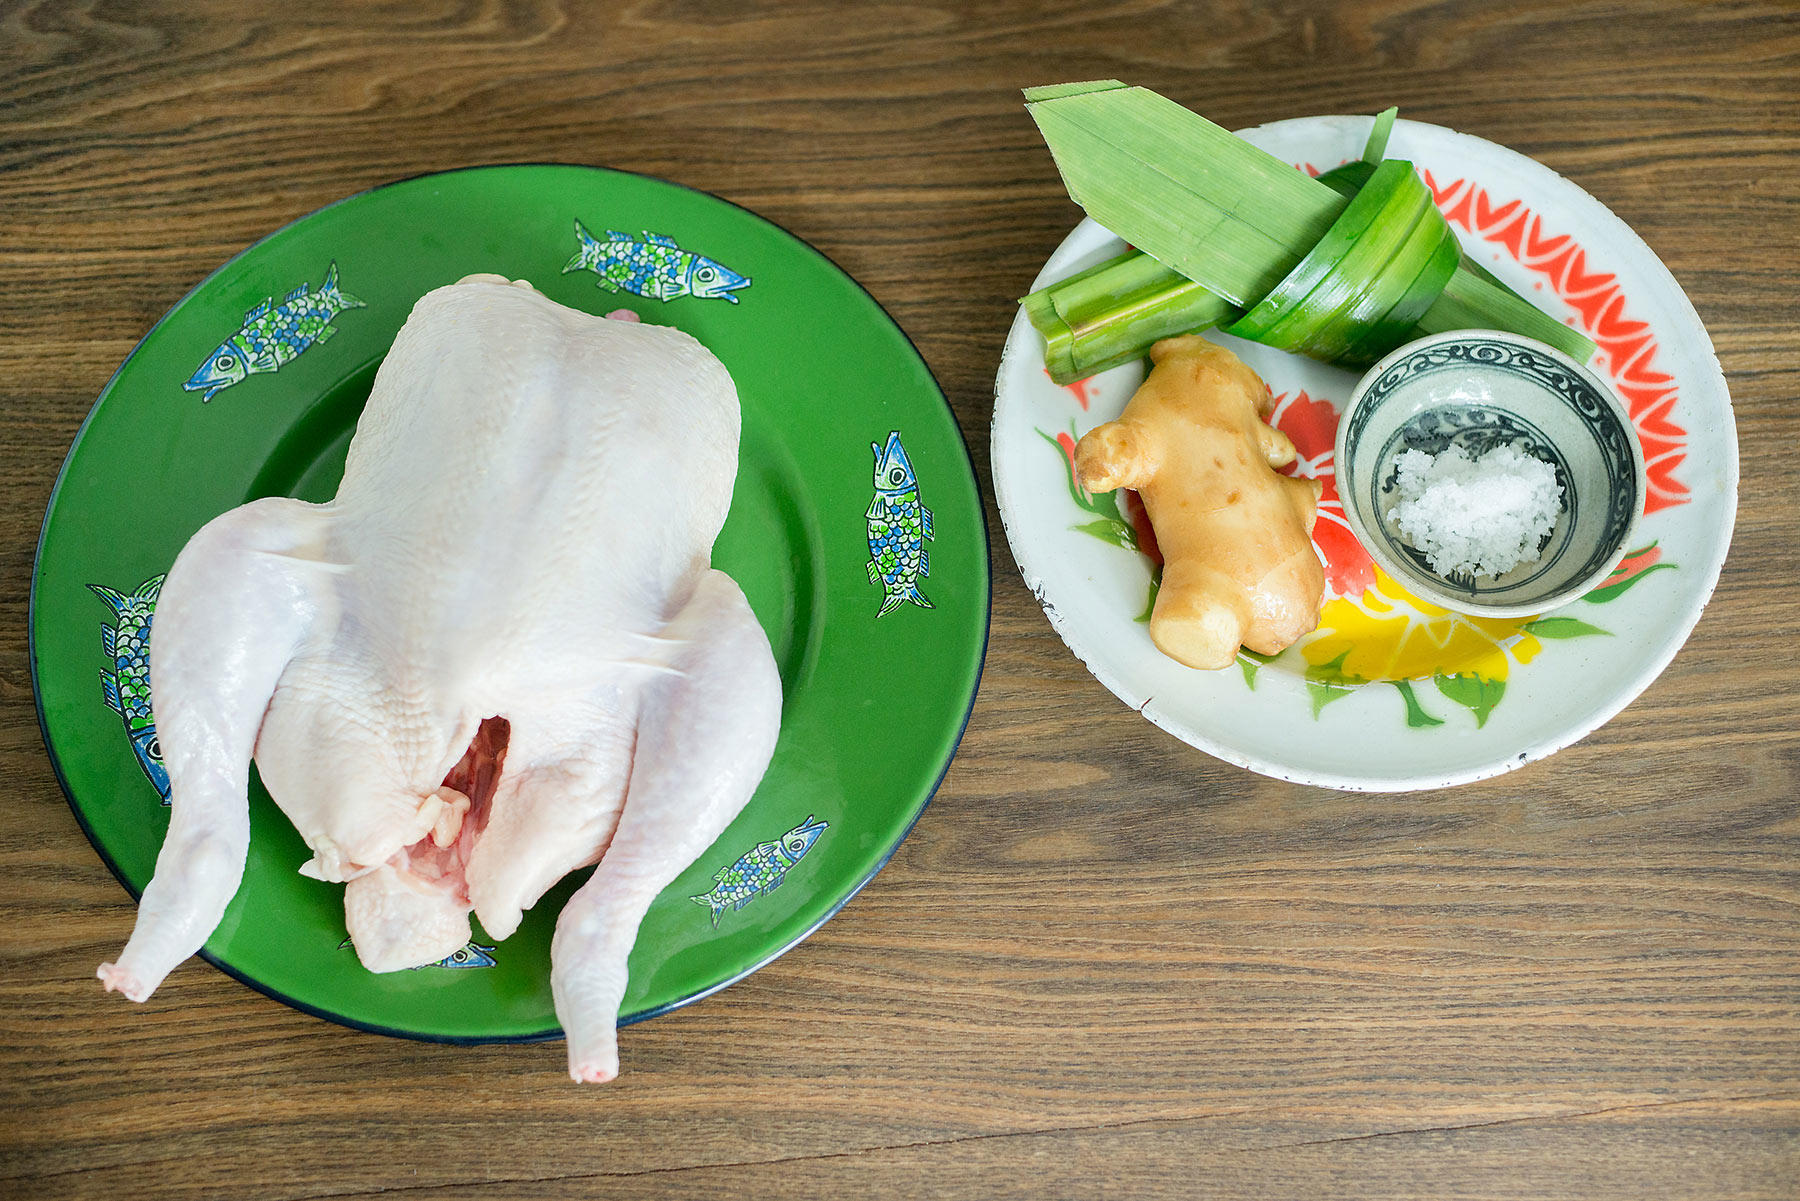 マジックペースト で カオマンガイ をつくる みもっと先生の本格タイ料理レシピ 公式 Dancyu ダンチュウ